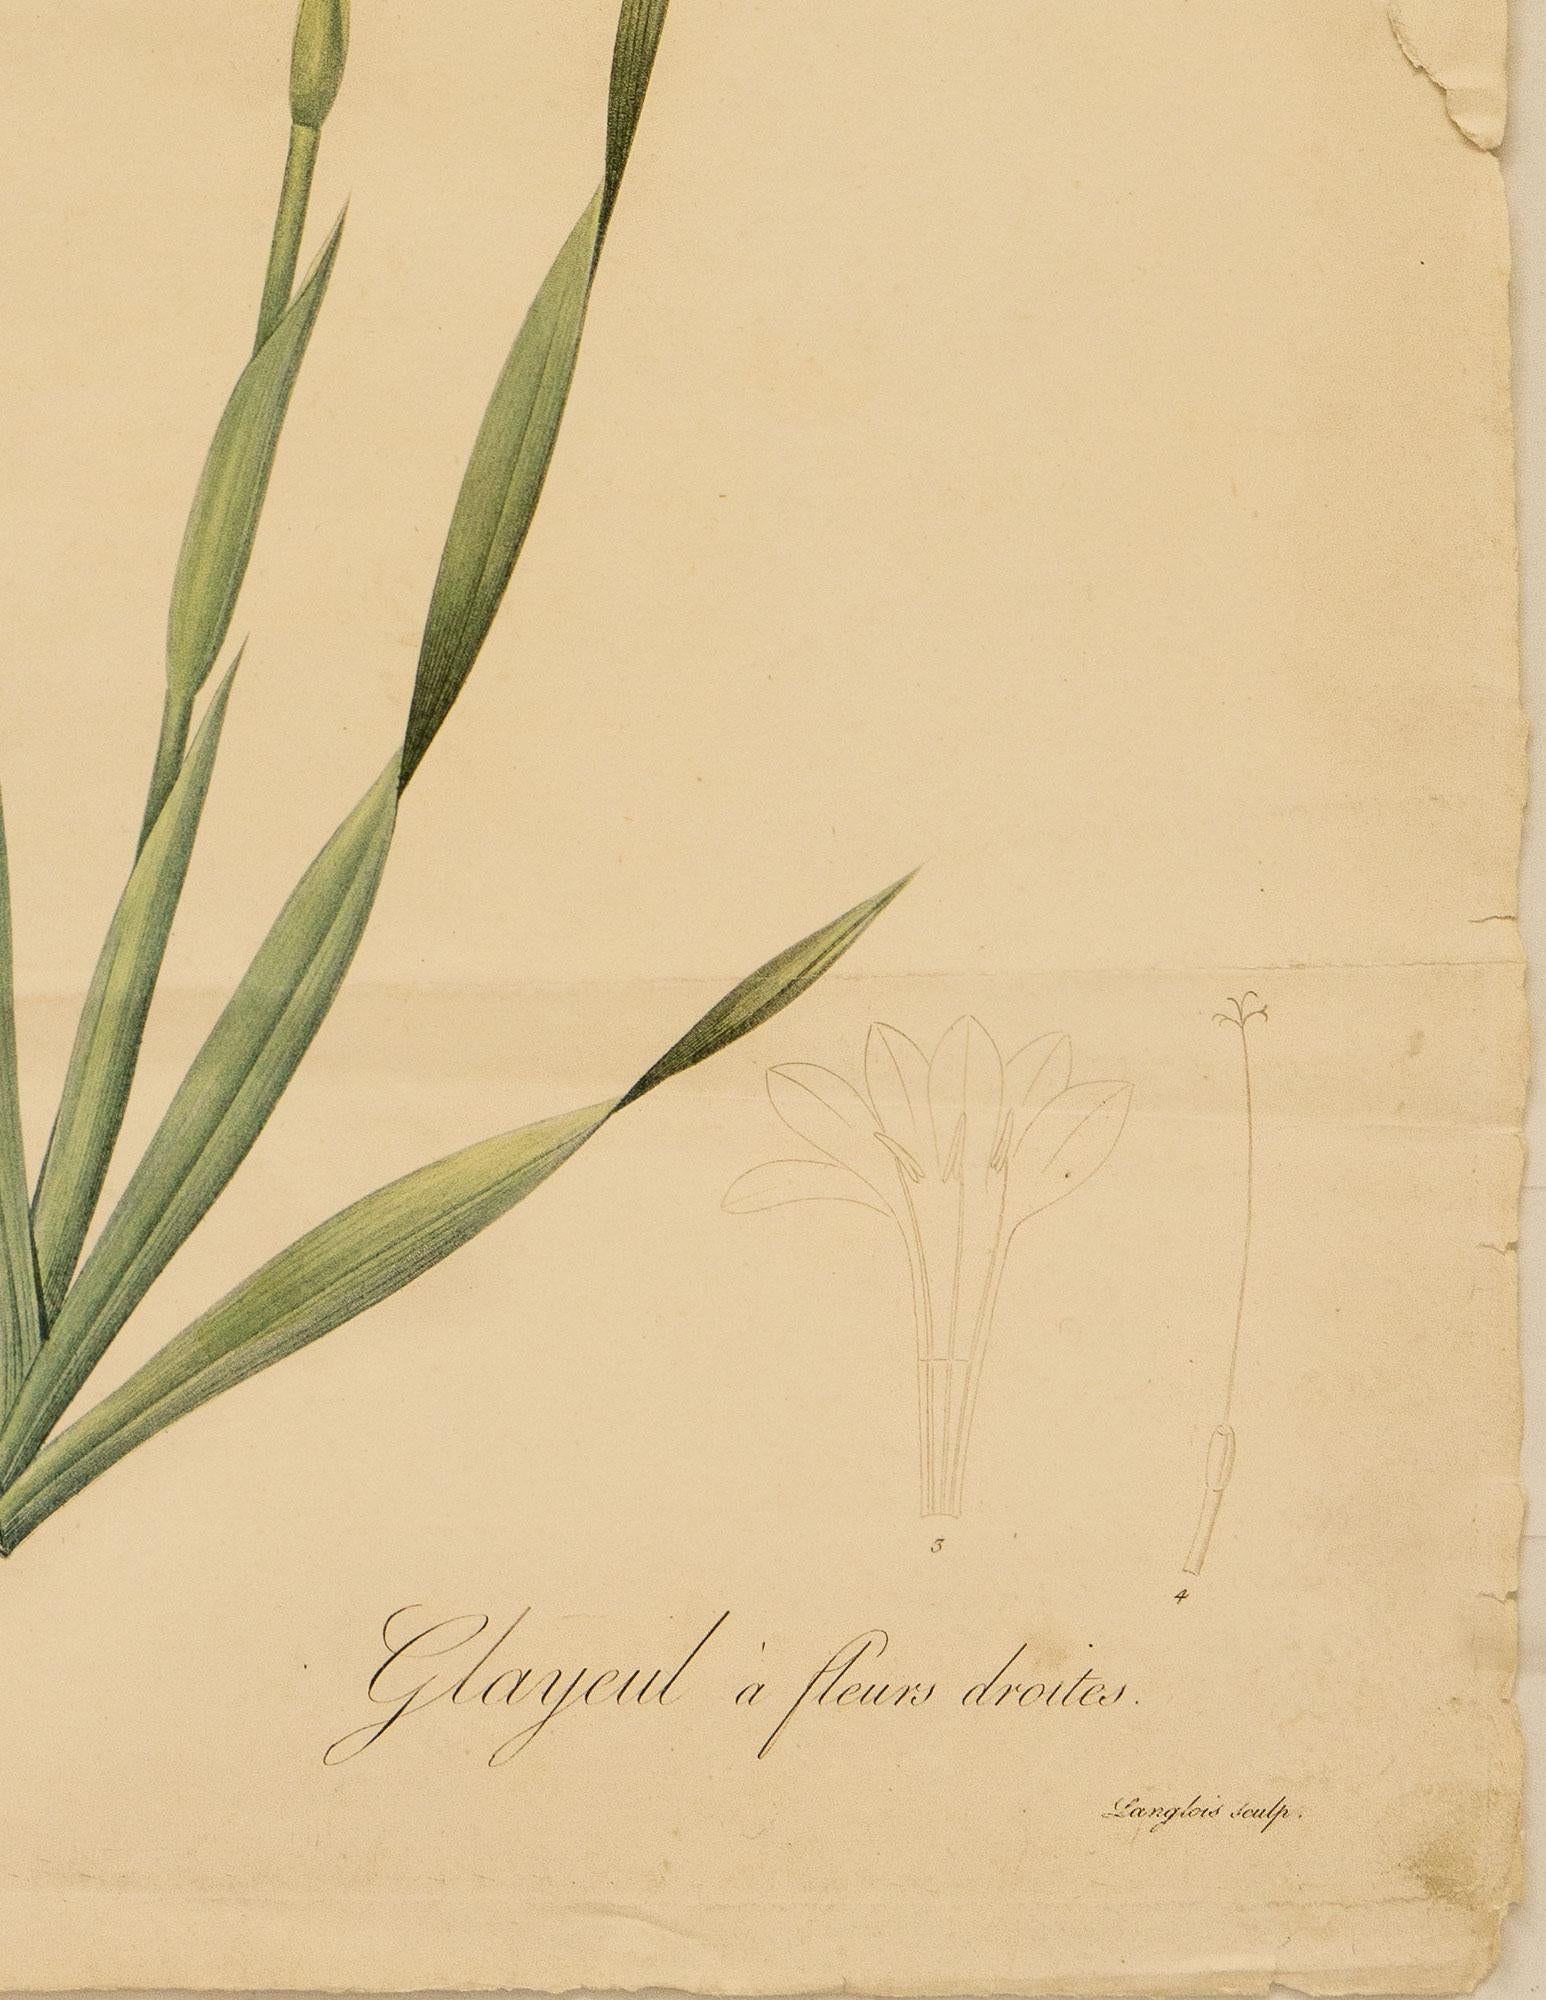 Kolorierter Stich von Langlois nach dem Maler und Botaniker Pierre-Joseph Redouté (1759-1840), aus Les Liliacées, veröffentlicht 1802-1816. Redoutés größtes und ehrgeizigstes Werk, das zu seinen besten Arbeiten zählt, umfasst 486 Stiche in 8 Bänden